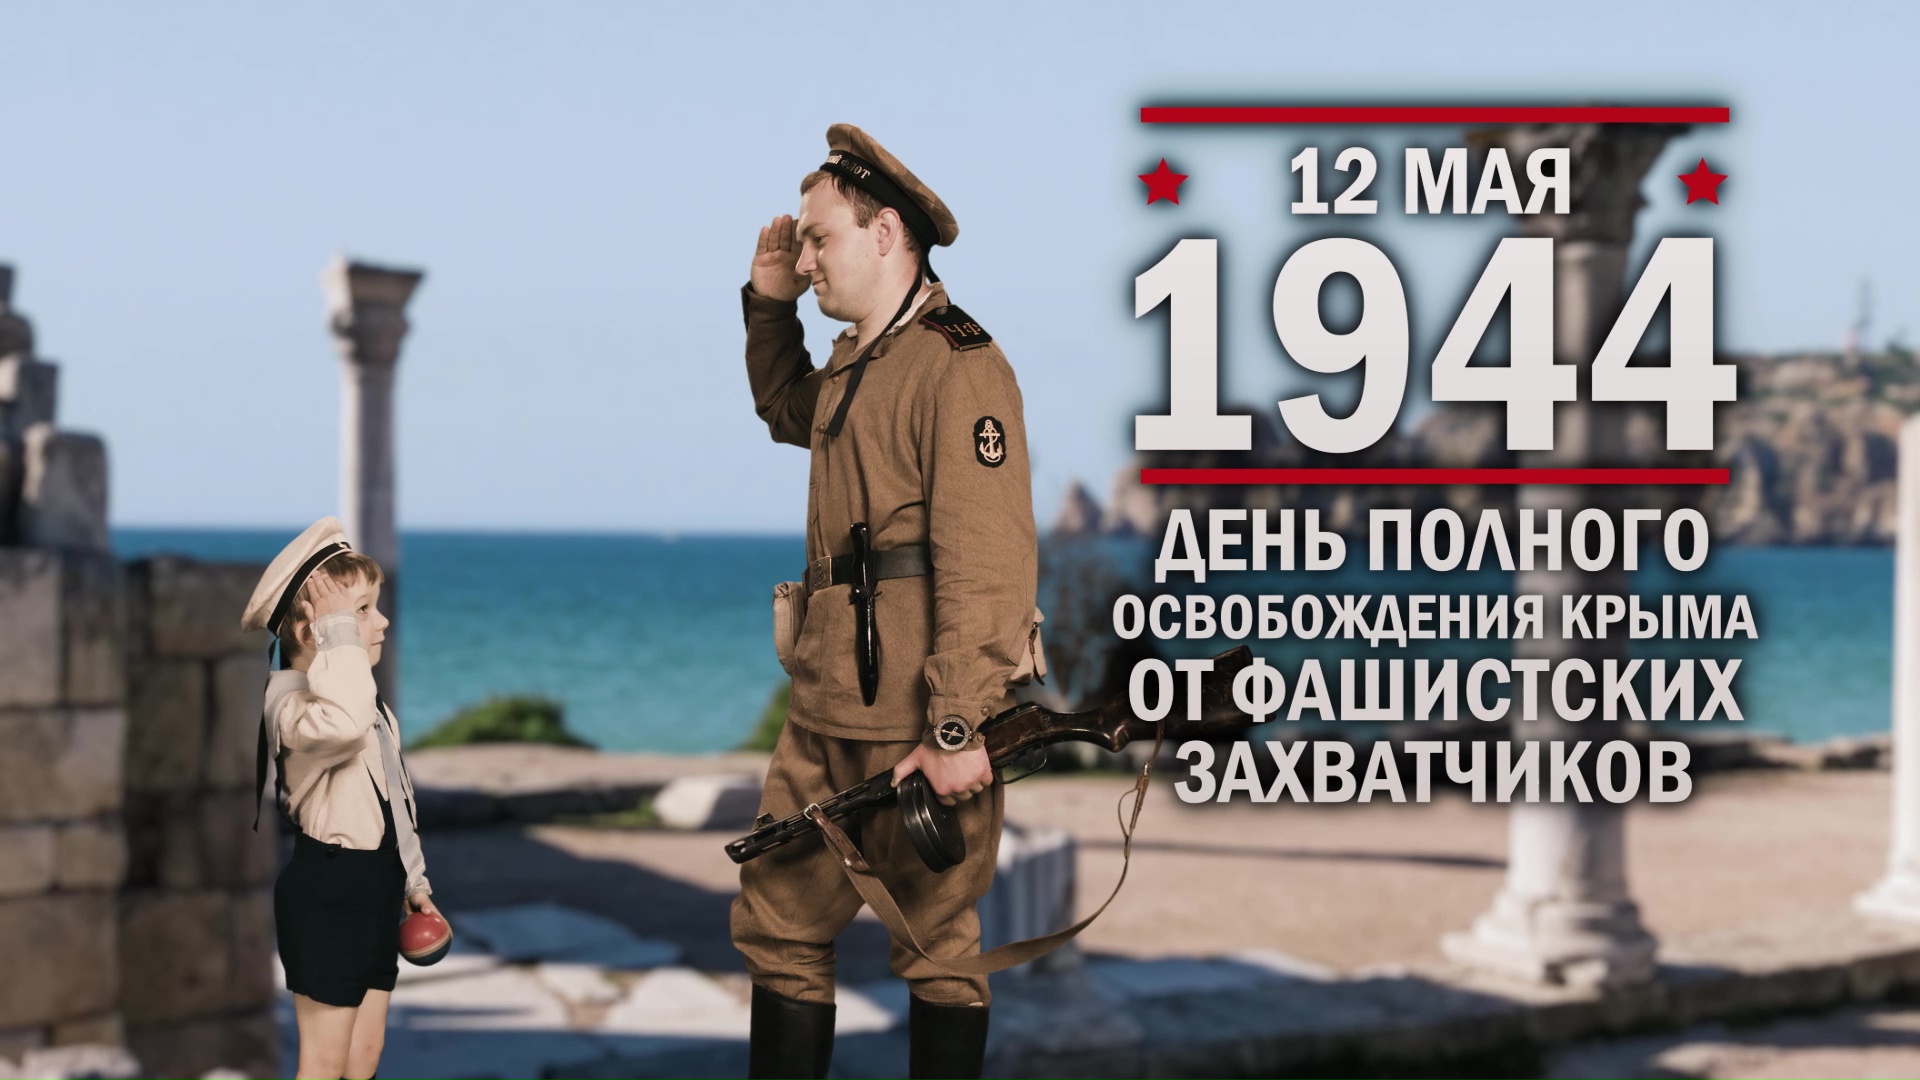 12 мая 1944 год. День полного освобождения Крыма от фашистских захватчиков